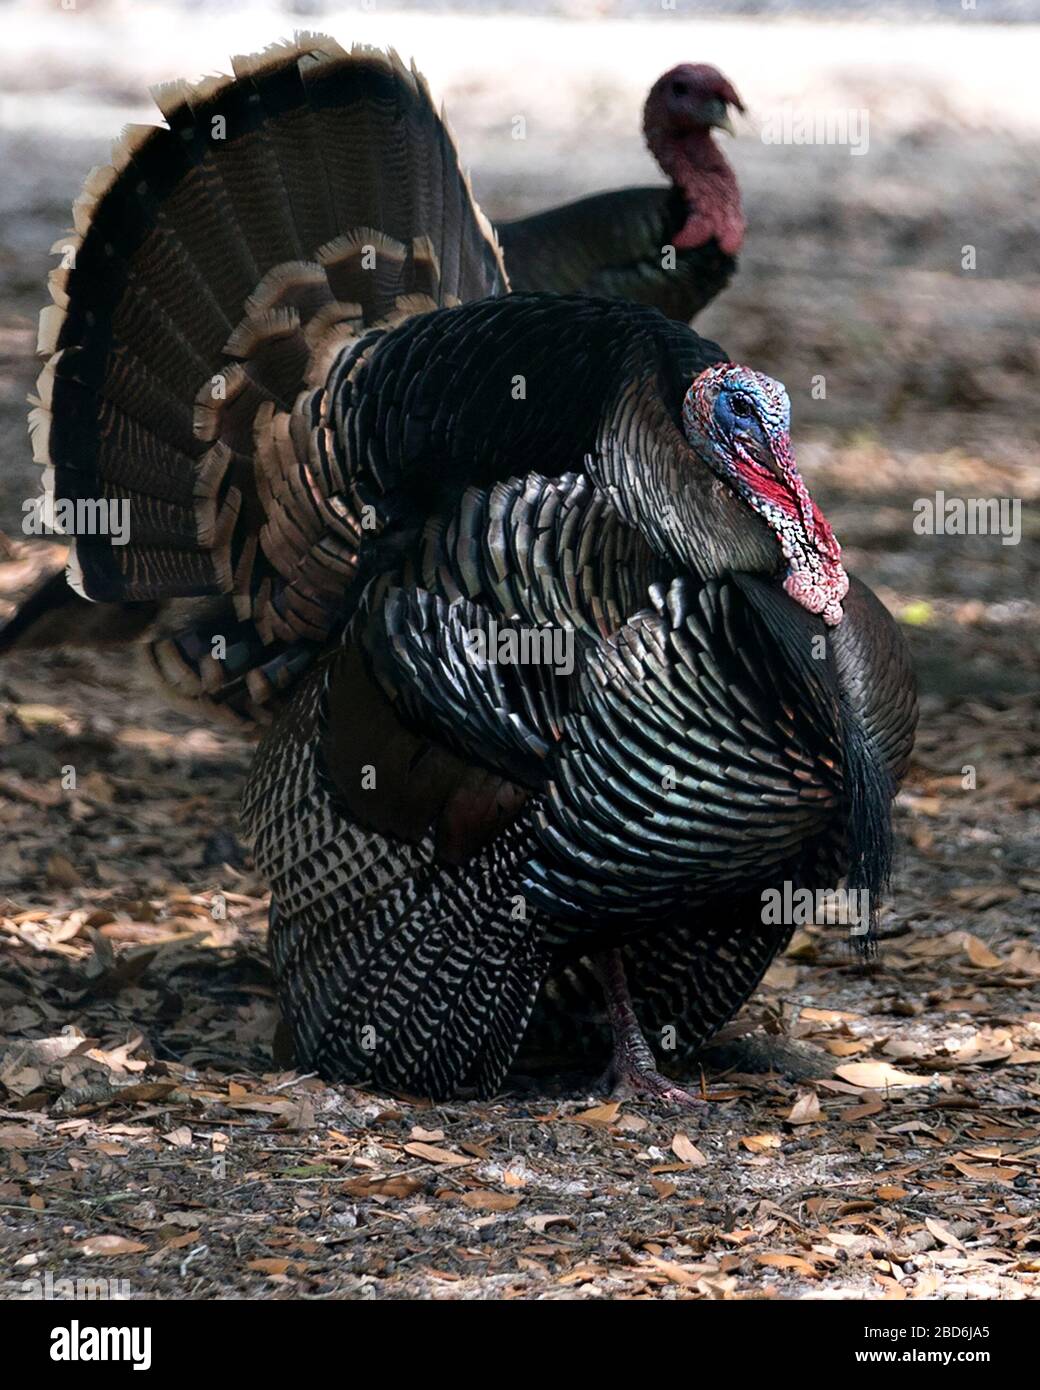 Wild turkey uccello testa primo piano profilo vista con sfondo bokeh che mostra testa, becco, occhio, acqua, fan out coda piume, piumaggio nei suoi ambientatori Foto Stock